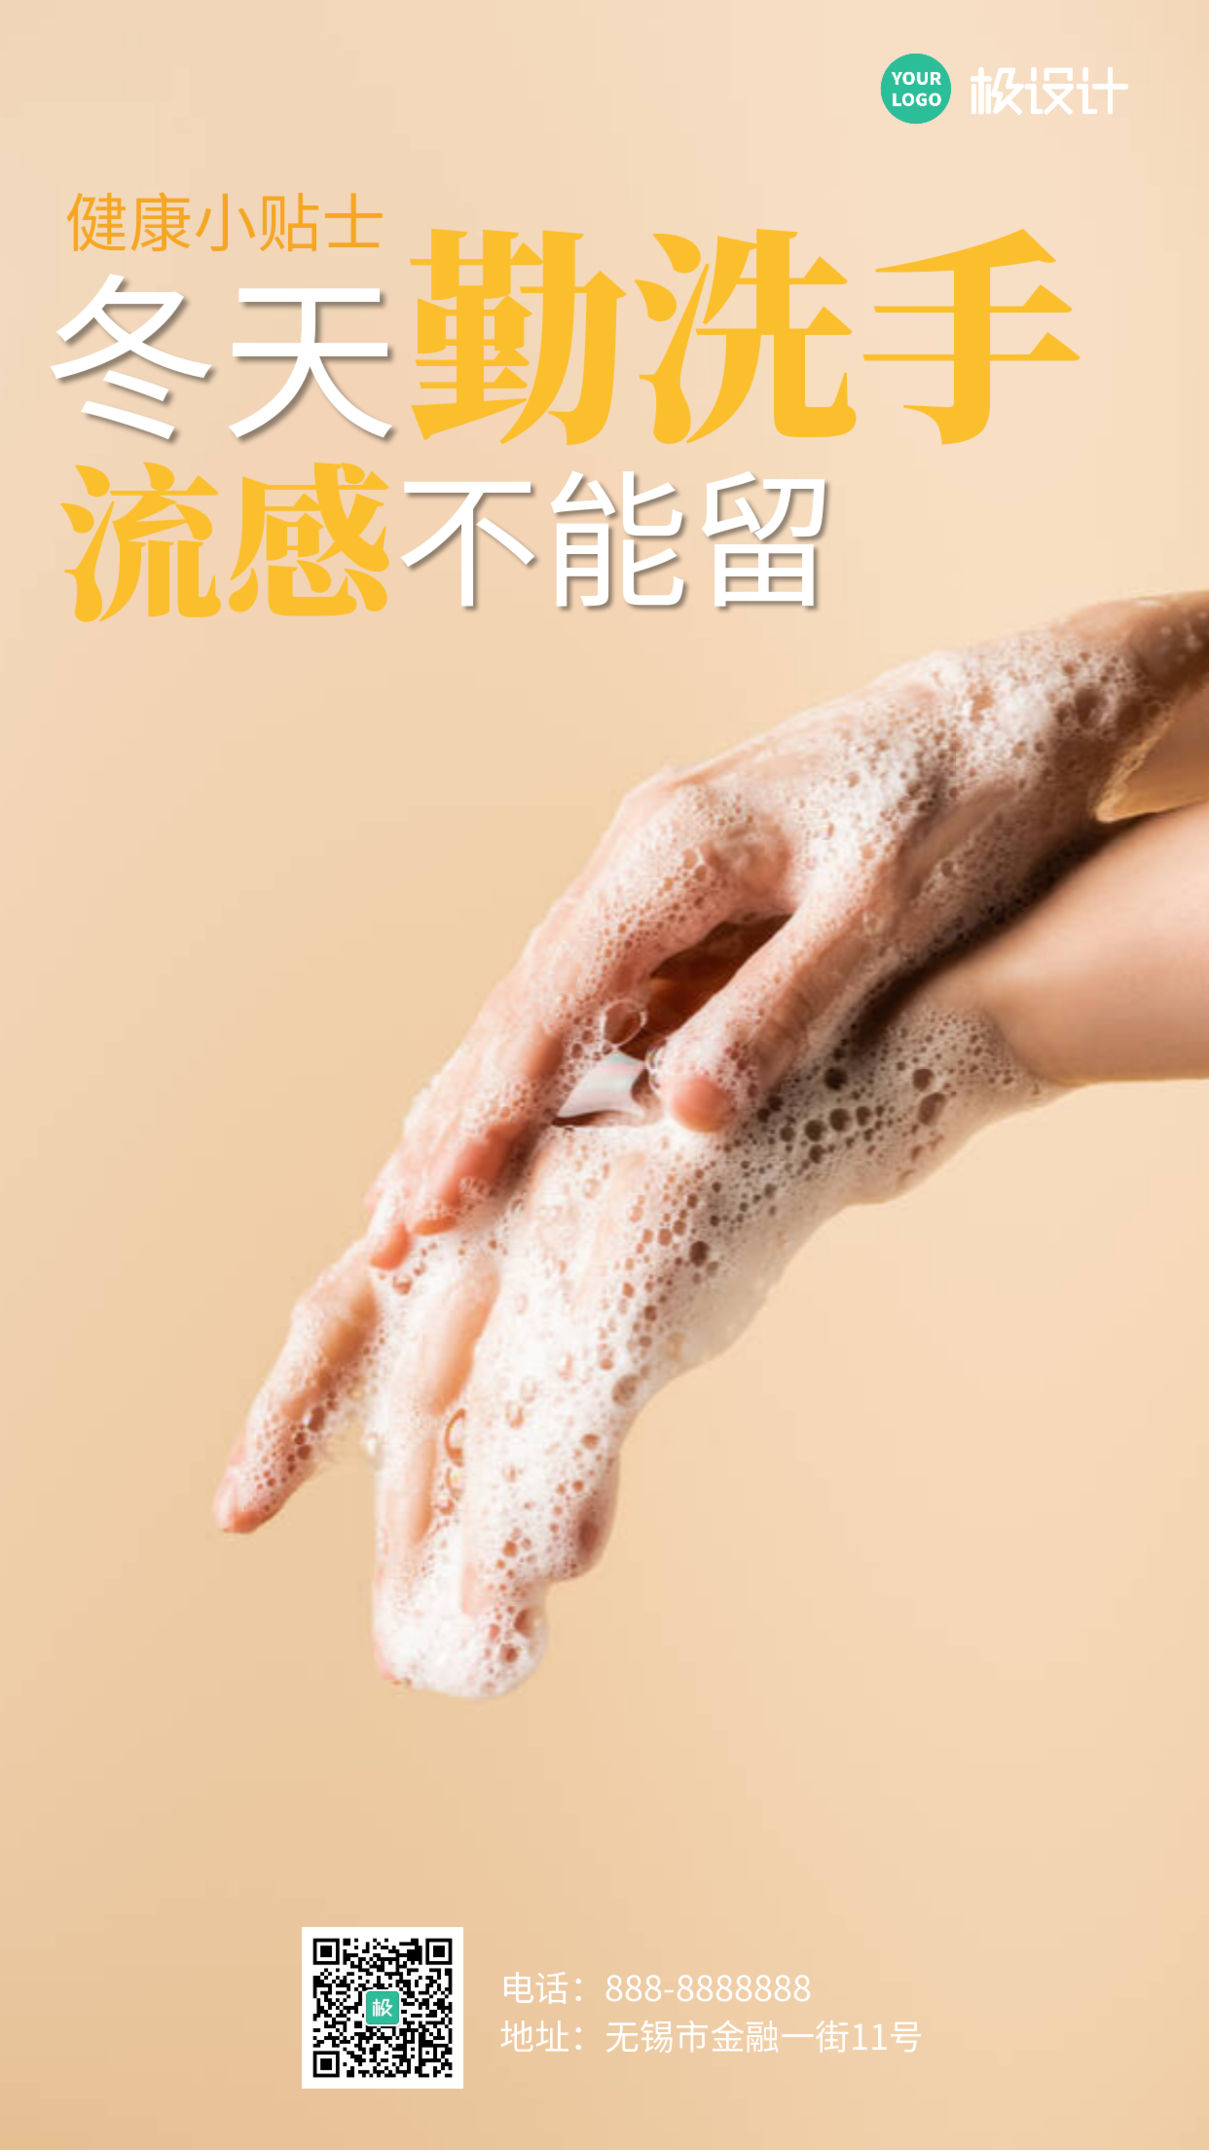 勤洗手深色简约卫生手机营销海报